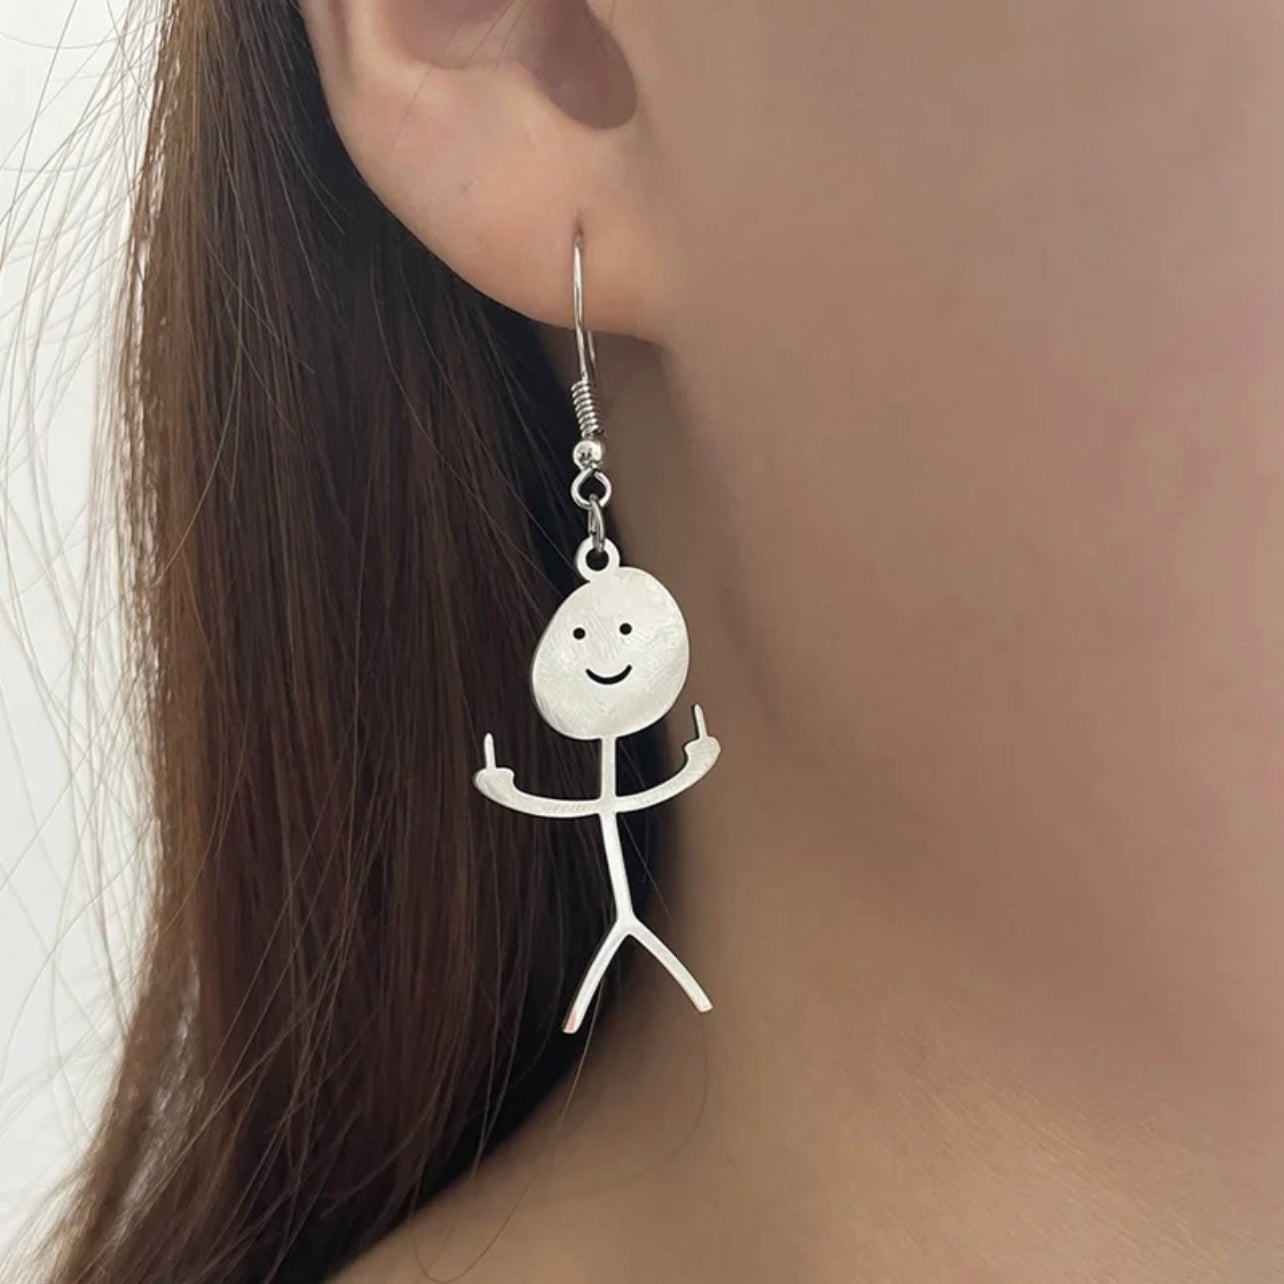 DILIGAF Earrings - Sassy Earrings, Handmade Earrings, Middle Finger, Stick Person